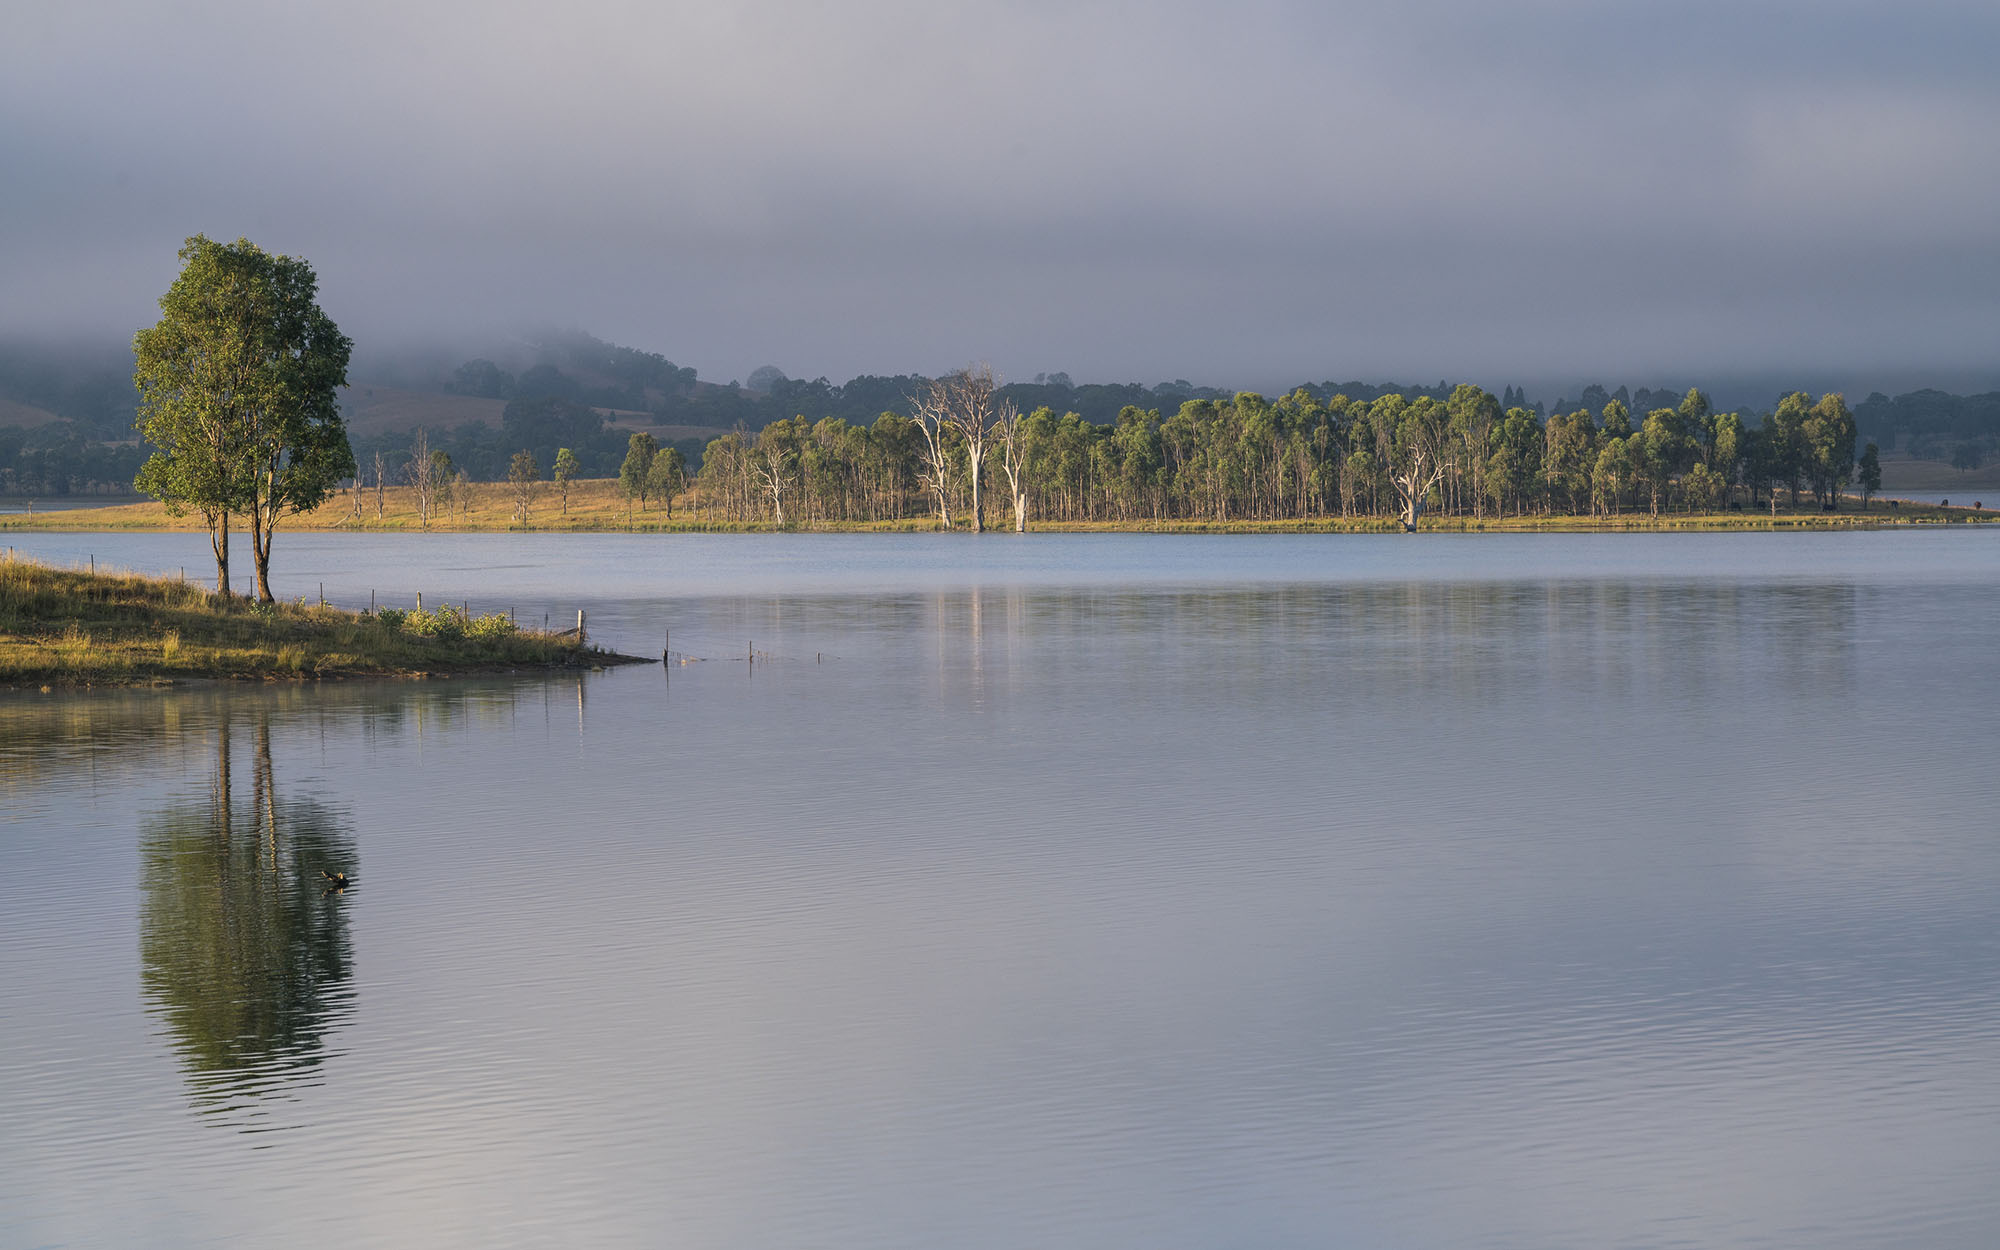 View of Lake - Image credit: Jason King